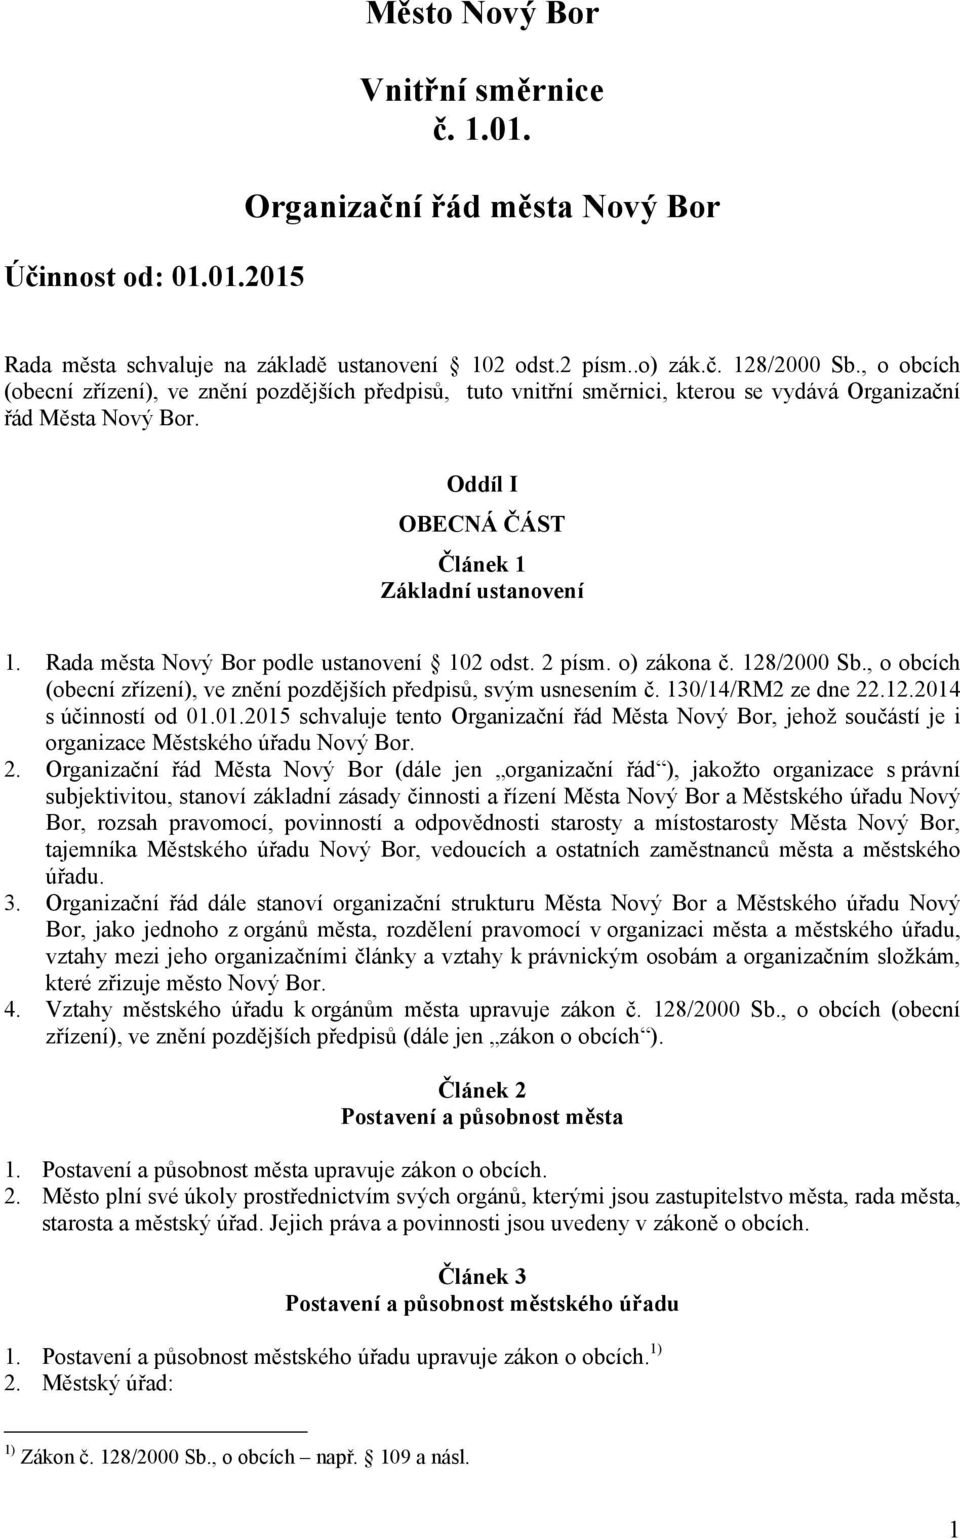 Rada města Nový Bor podle ustanovení 102 odst. 2 písm. o) zákona č. 128/2000 Sb., o obcích (obecní zřízení), ve znění pozdějších předpisů, svým usnesením č. 130/14/RM2 ze dne 22.12.2014 s účinností od 01.